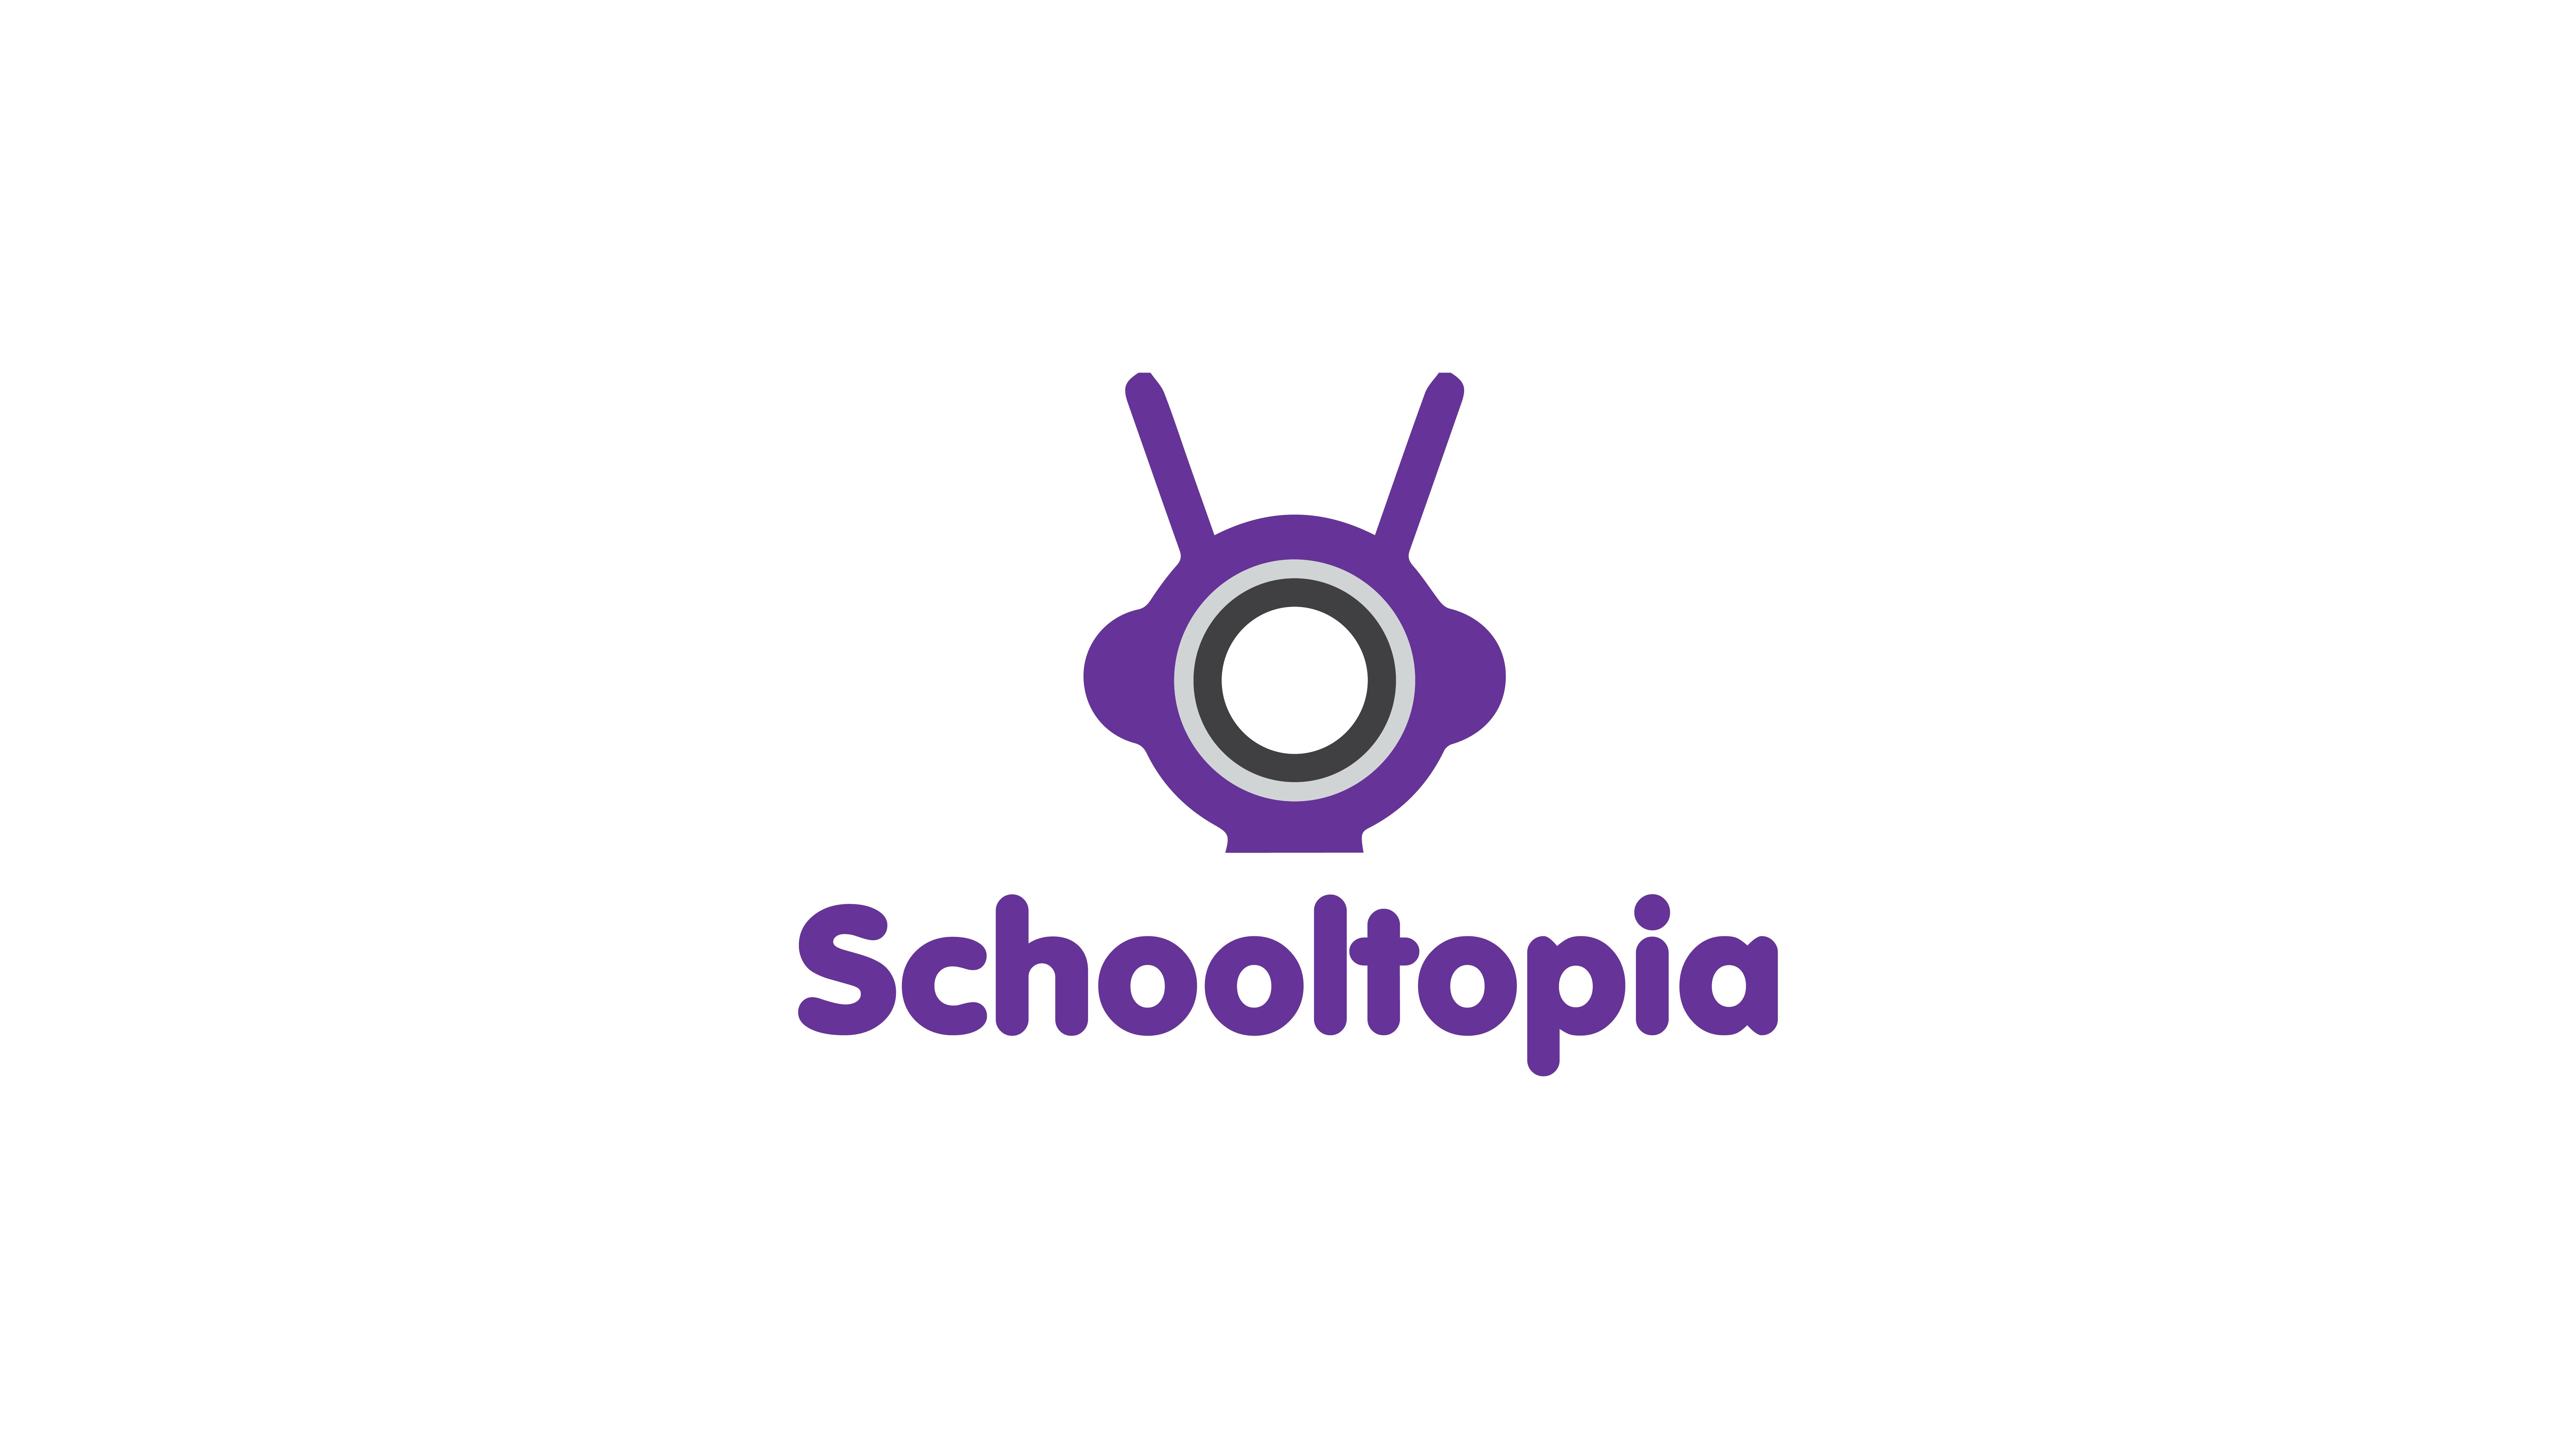 Schooltopia